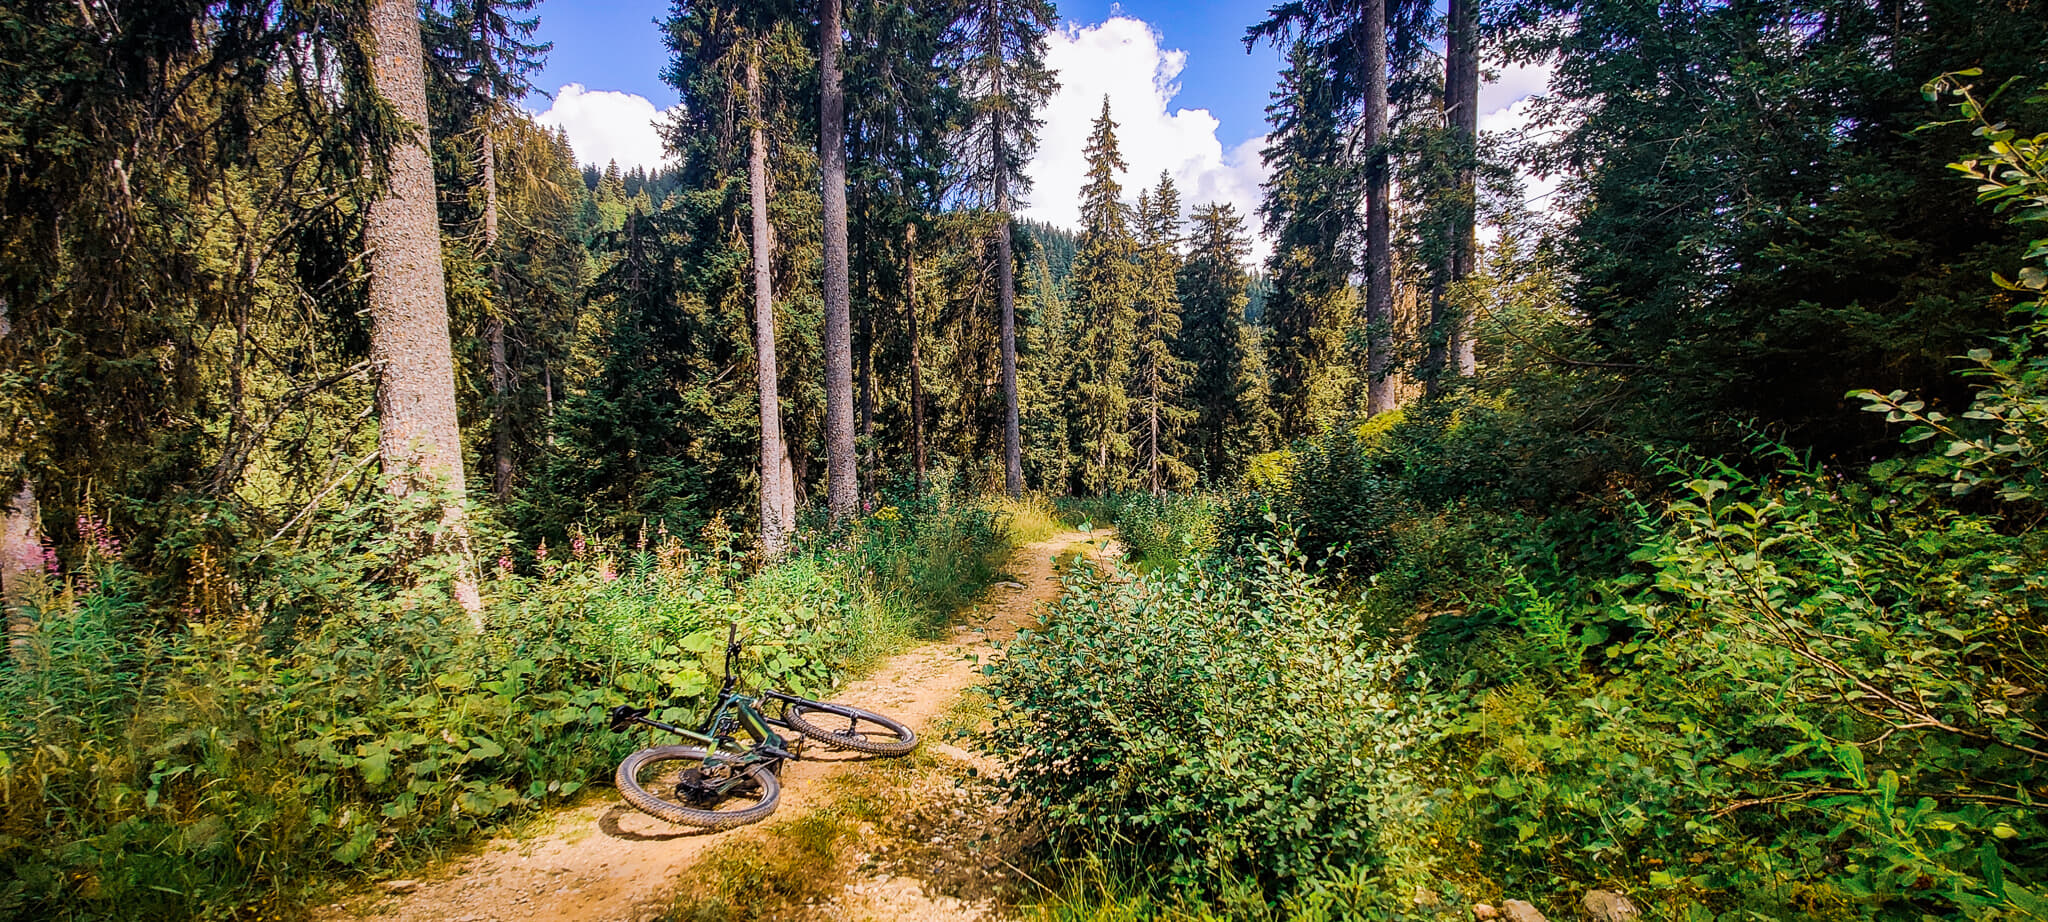 Un sentier forestier bordé de sapins sur lequel est couché un vélo